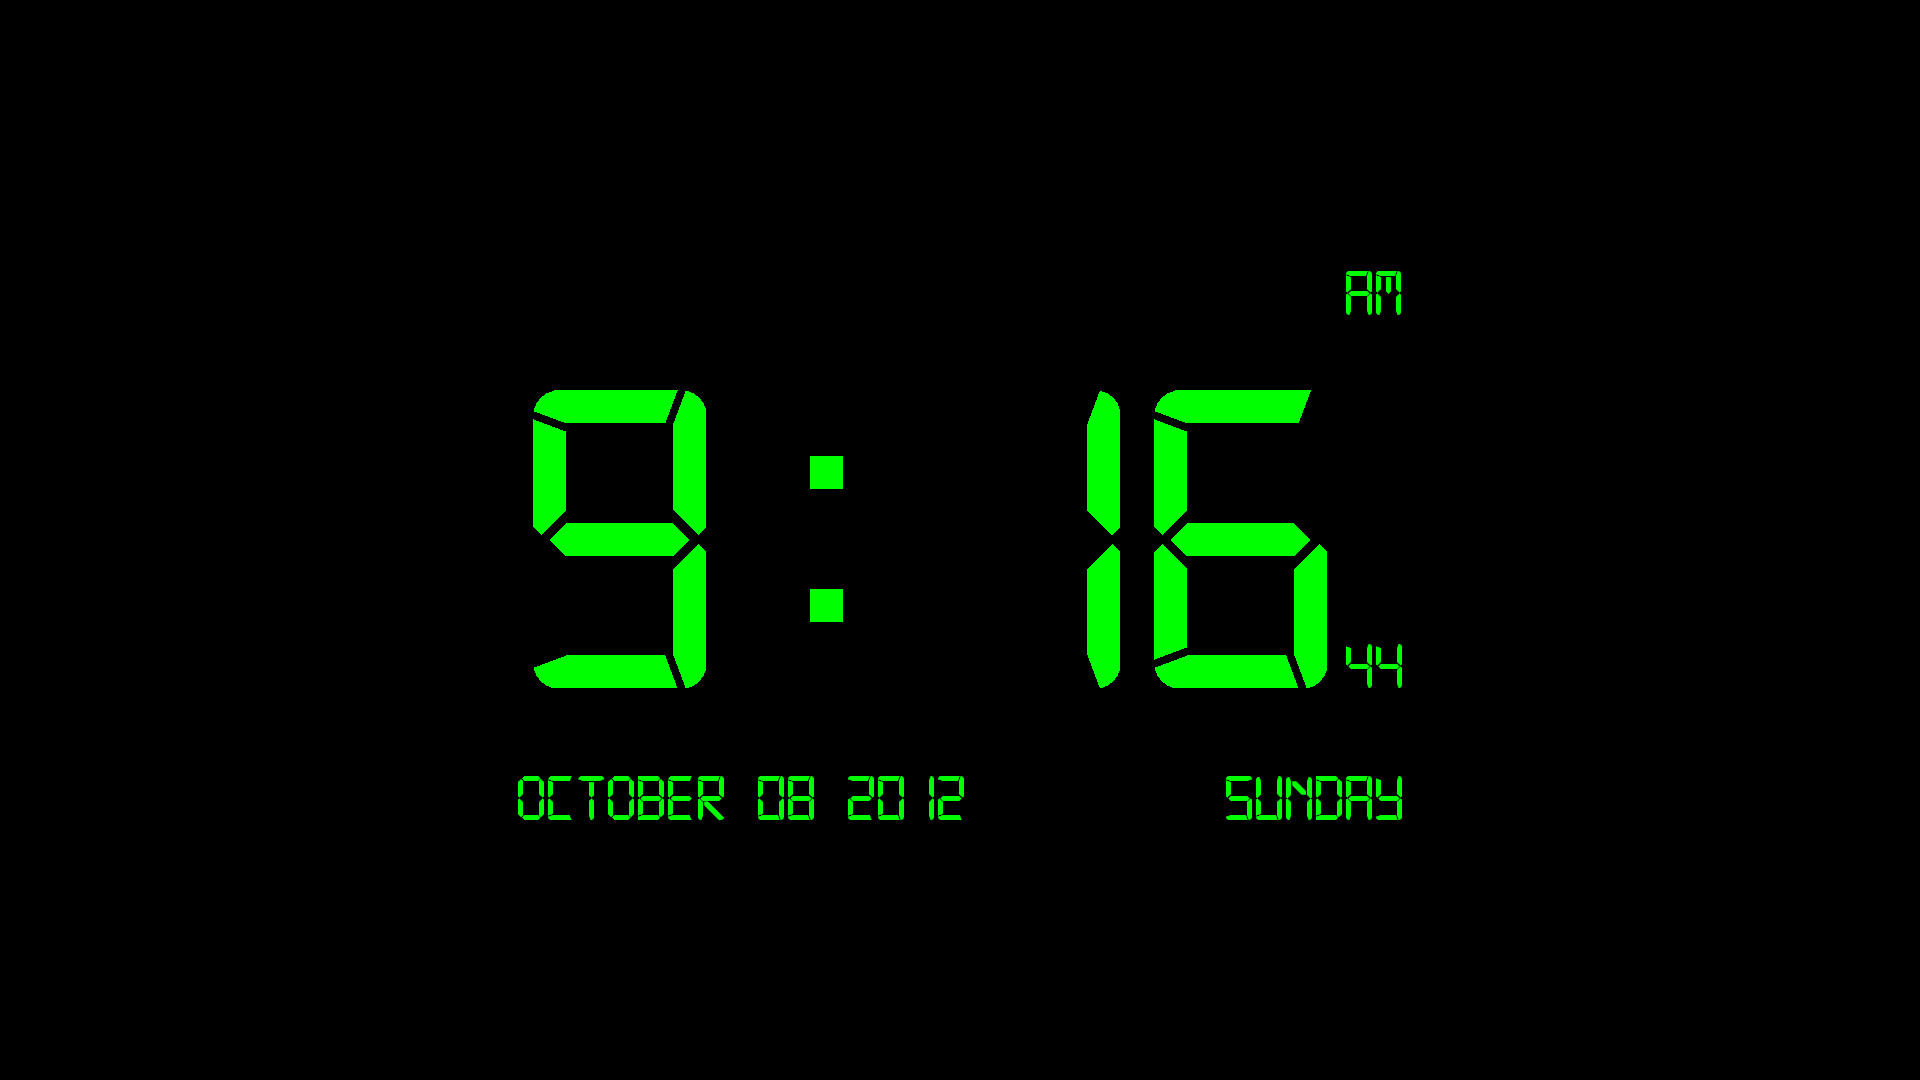 Clock Wallpaper for Windows 10 - WallpaperSafari